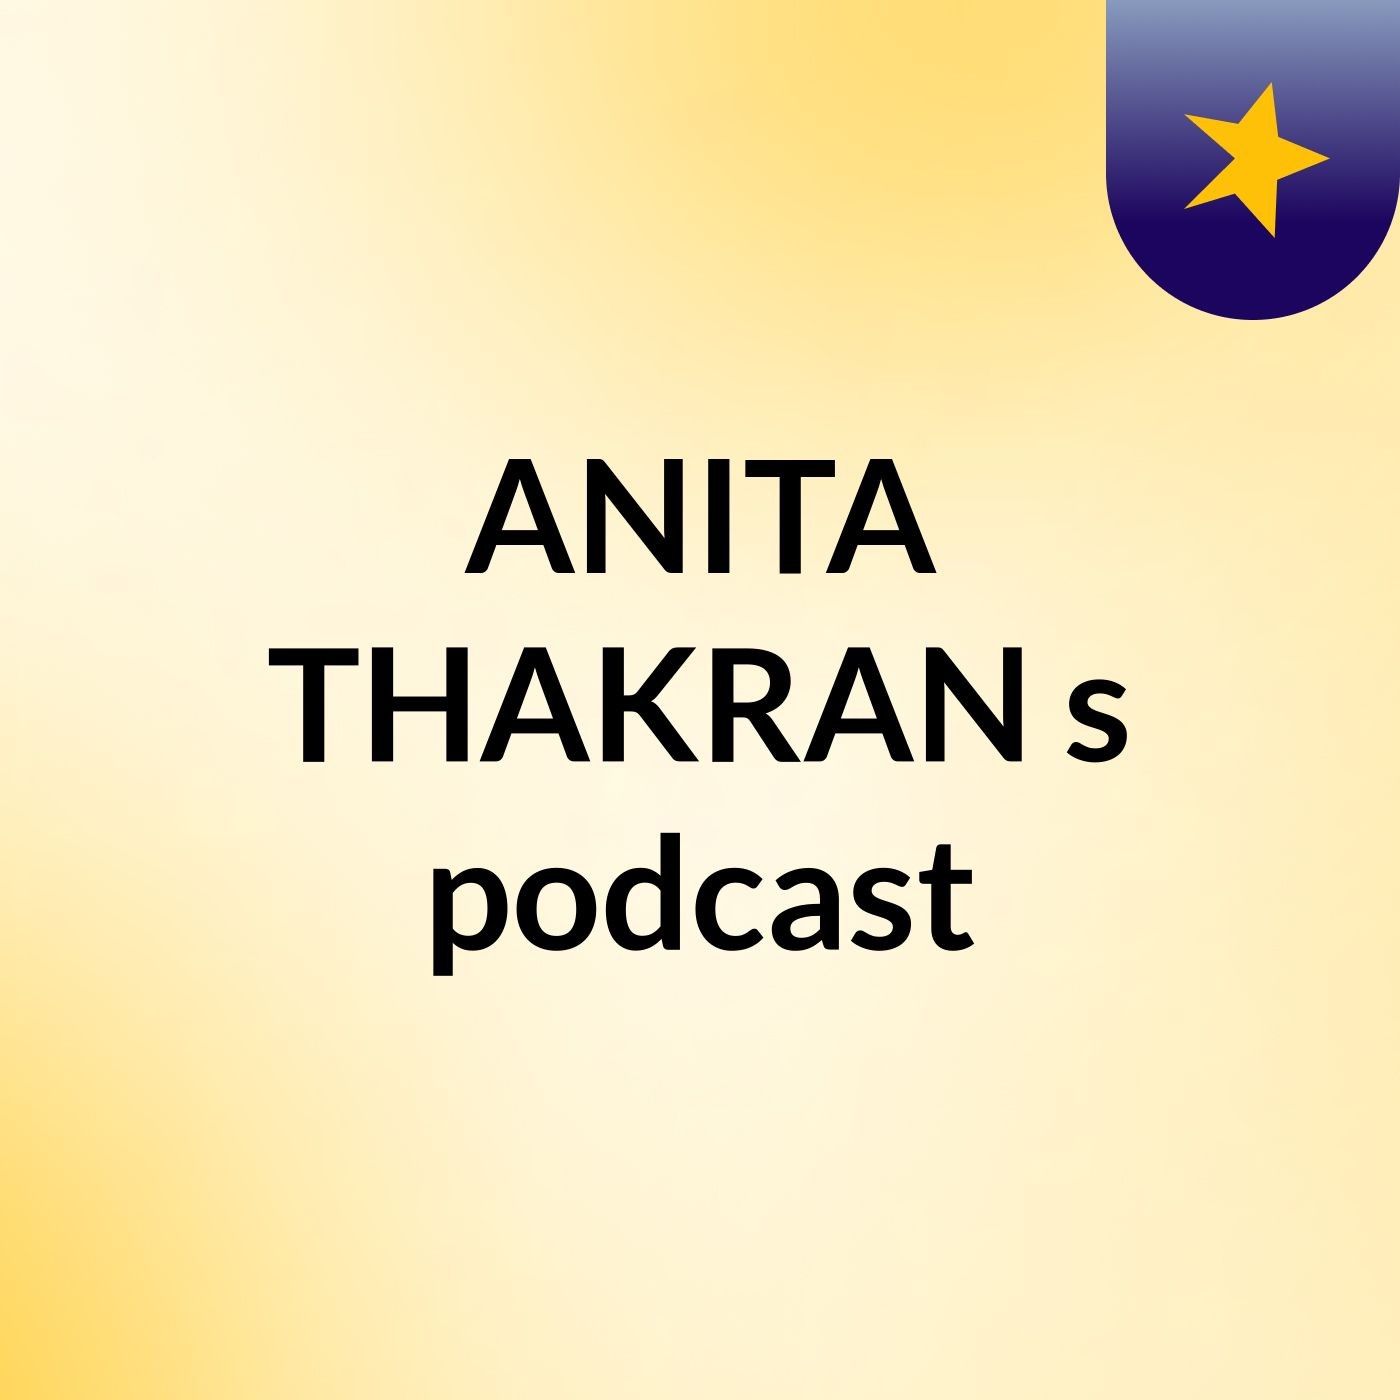 Episode 5 - ANITA THAKRAN's podcast